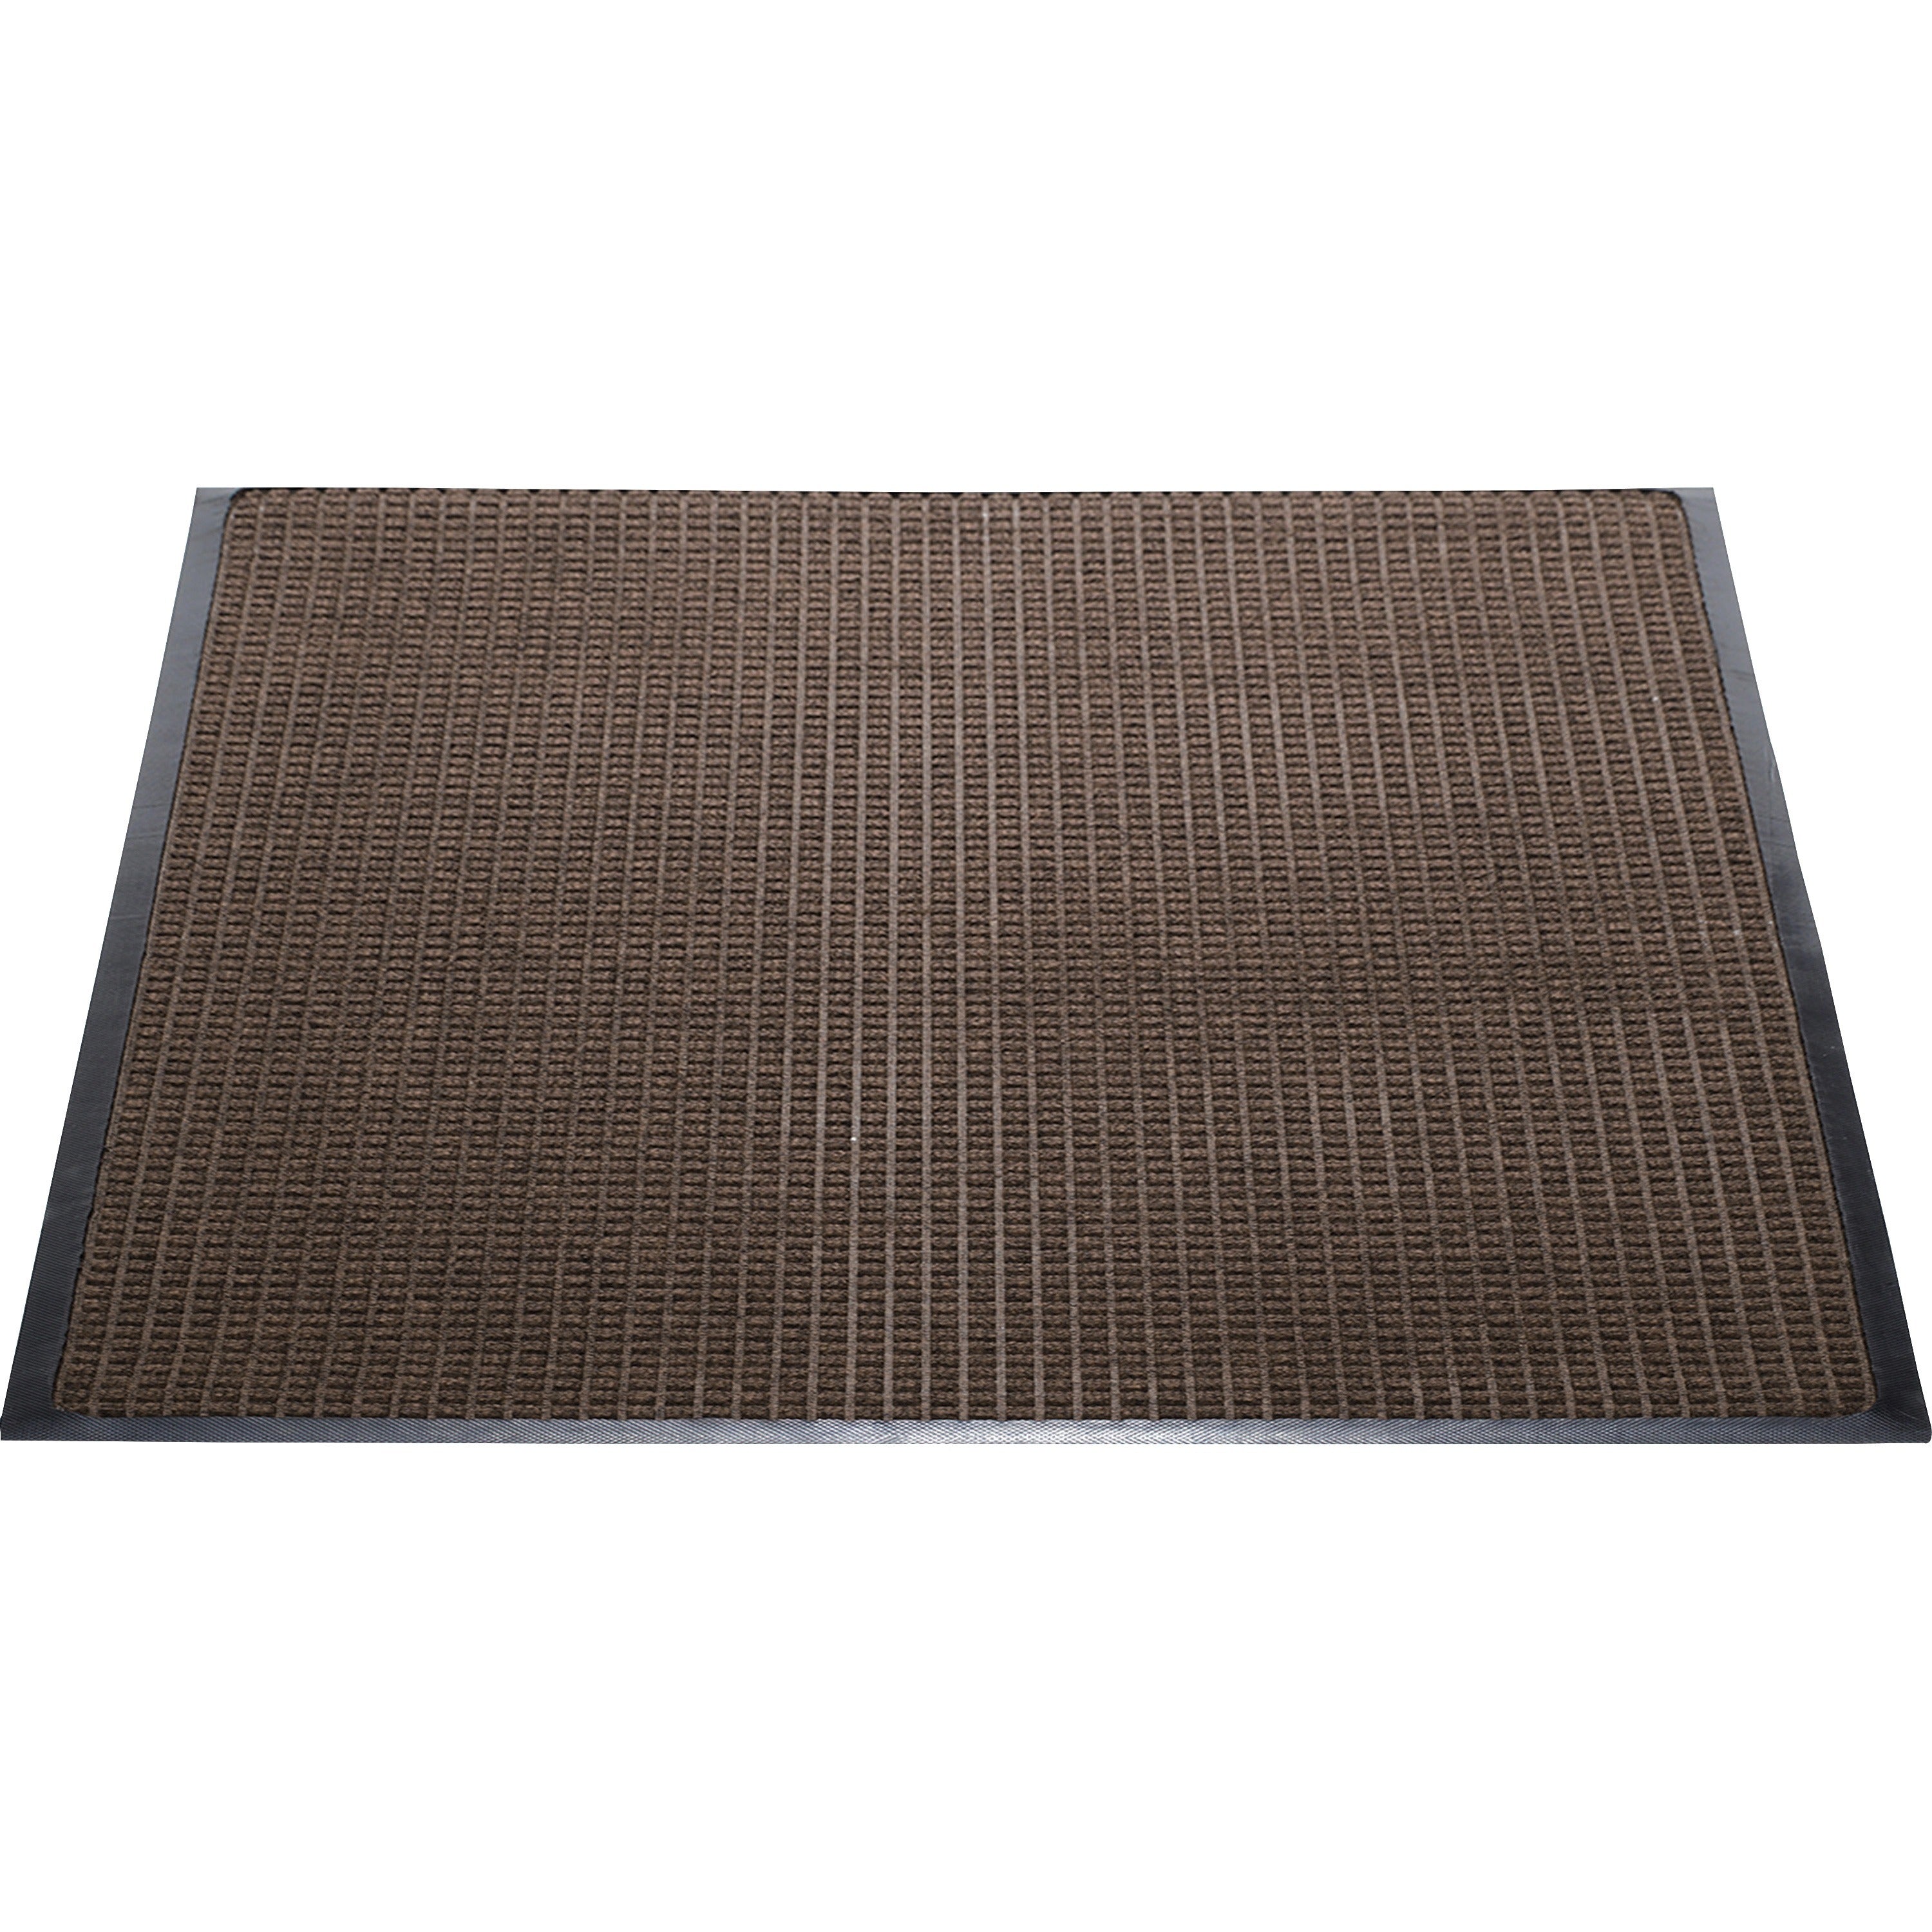 Genuine Joe Waterguard Wiper Scraper Floor Mats - Carpeted Floor, Indoor, Outdoor - 60" Length x 36" Width - Polypropylene - Brown - 1Each - 